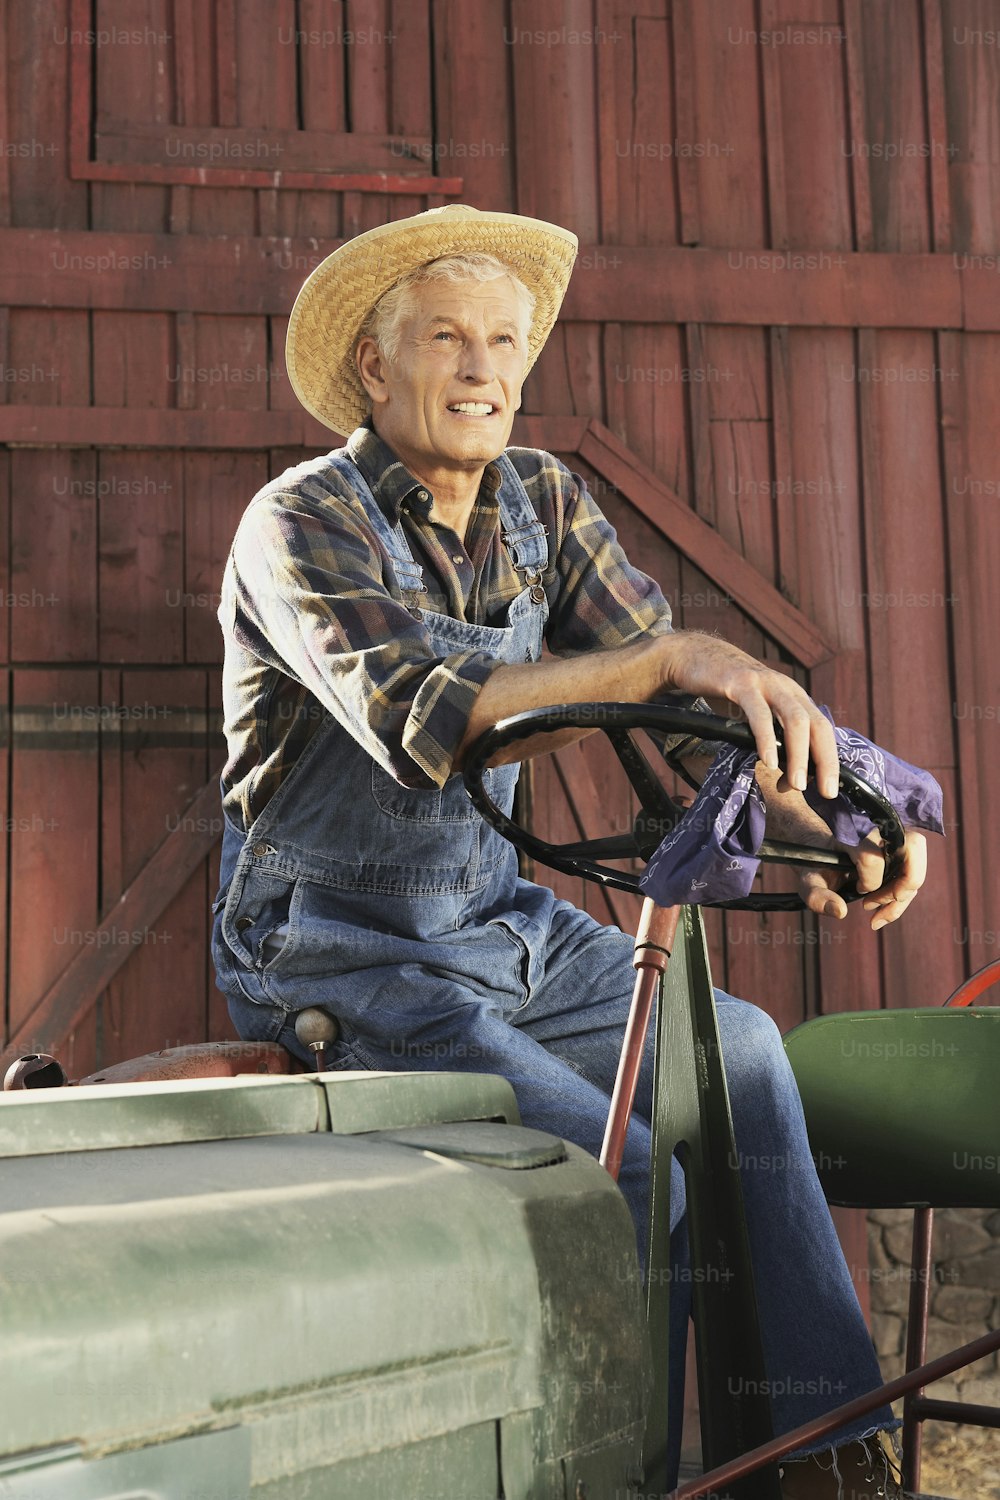 Un homme coiffé d’un chapeau de paille assis sur un tracteur